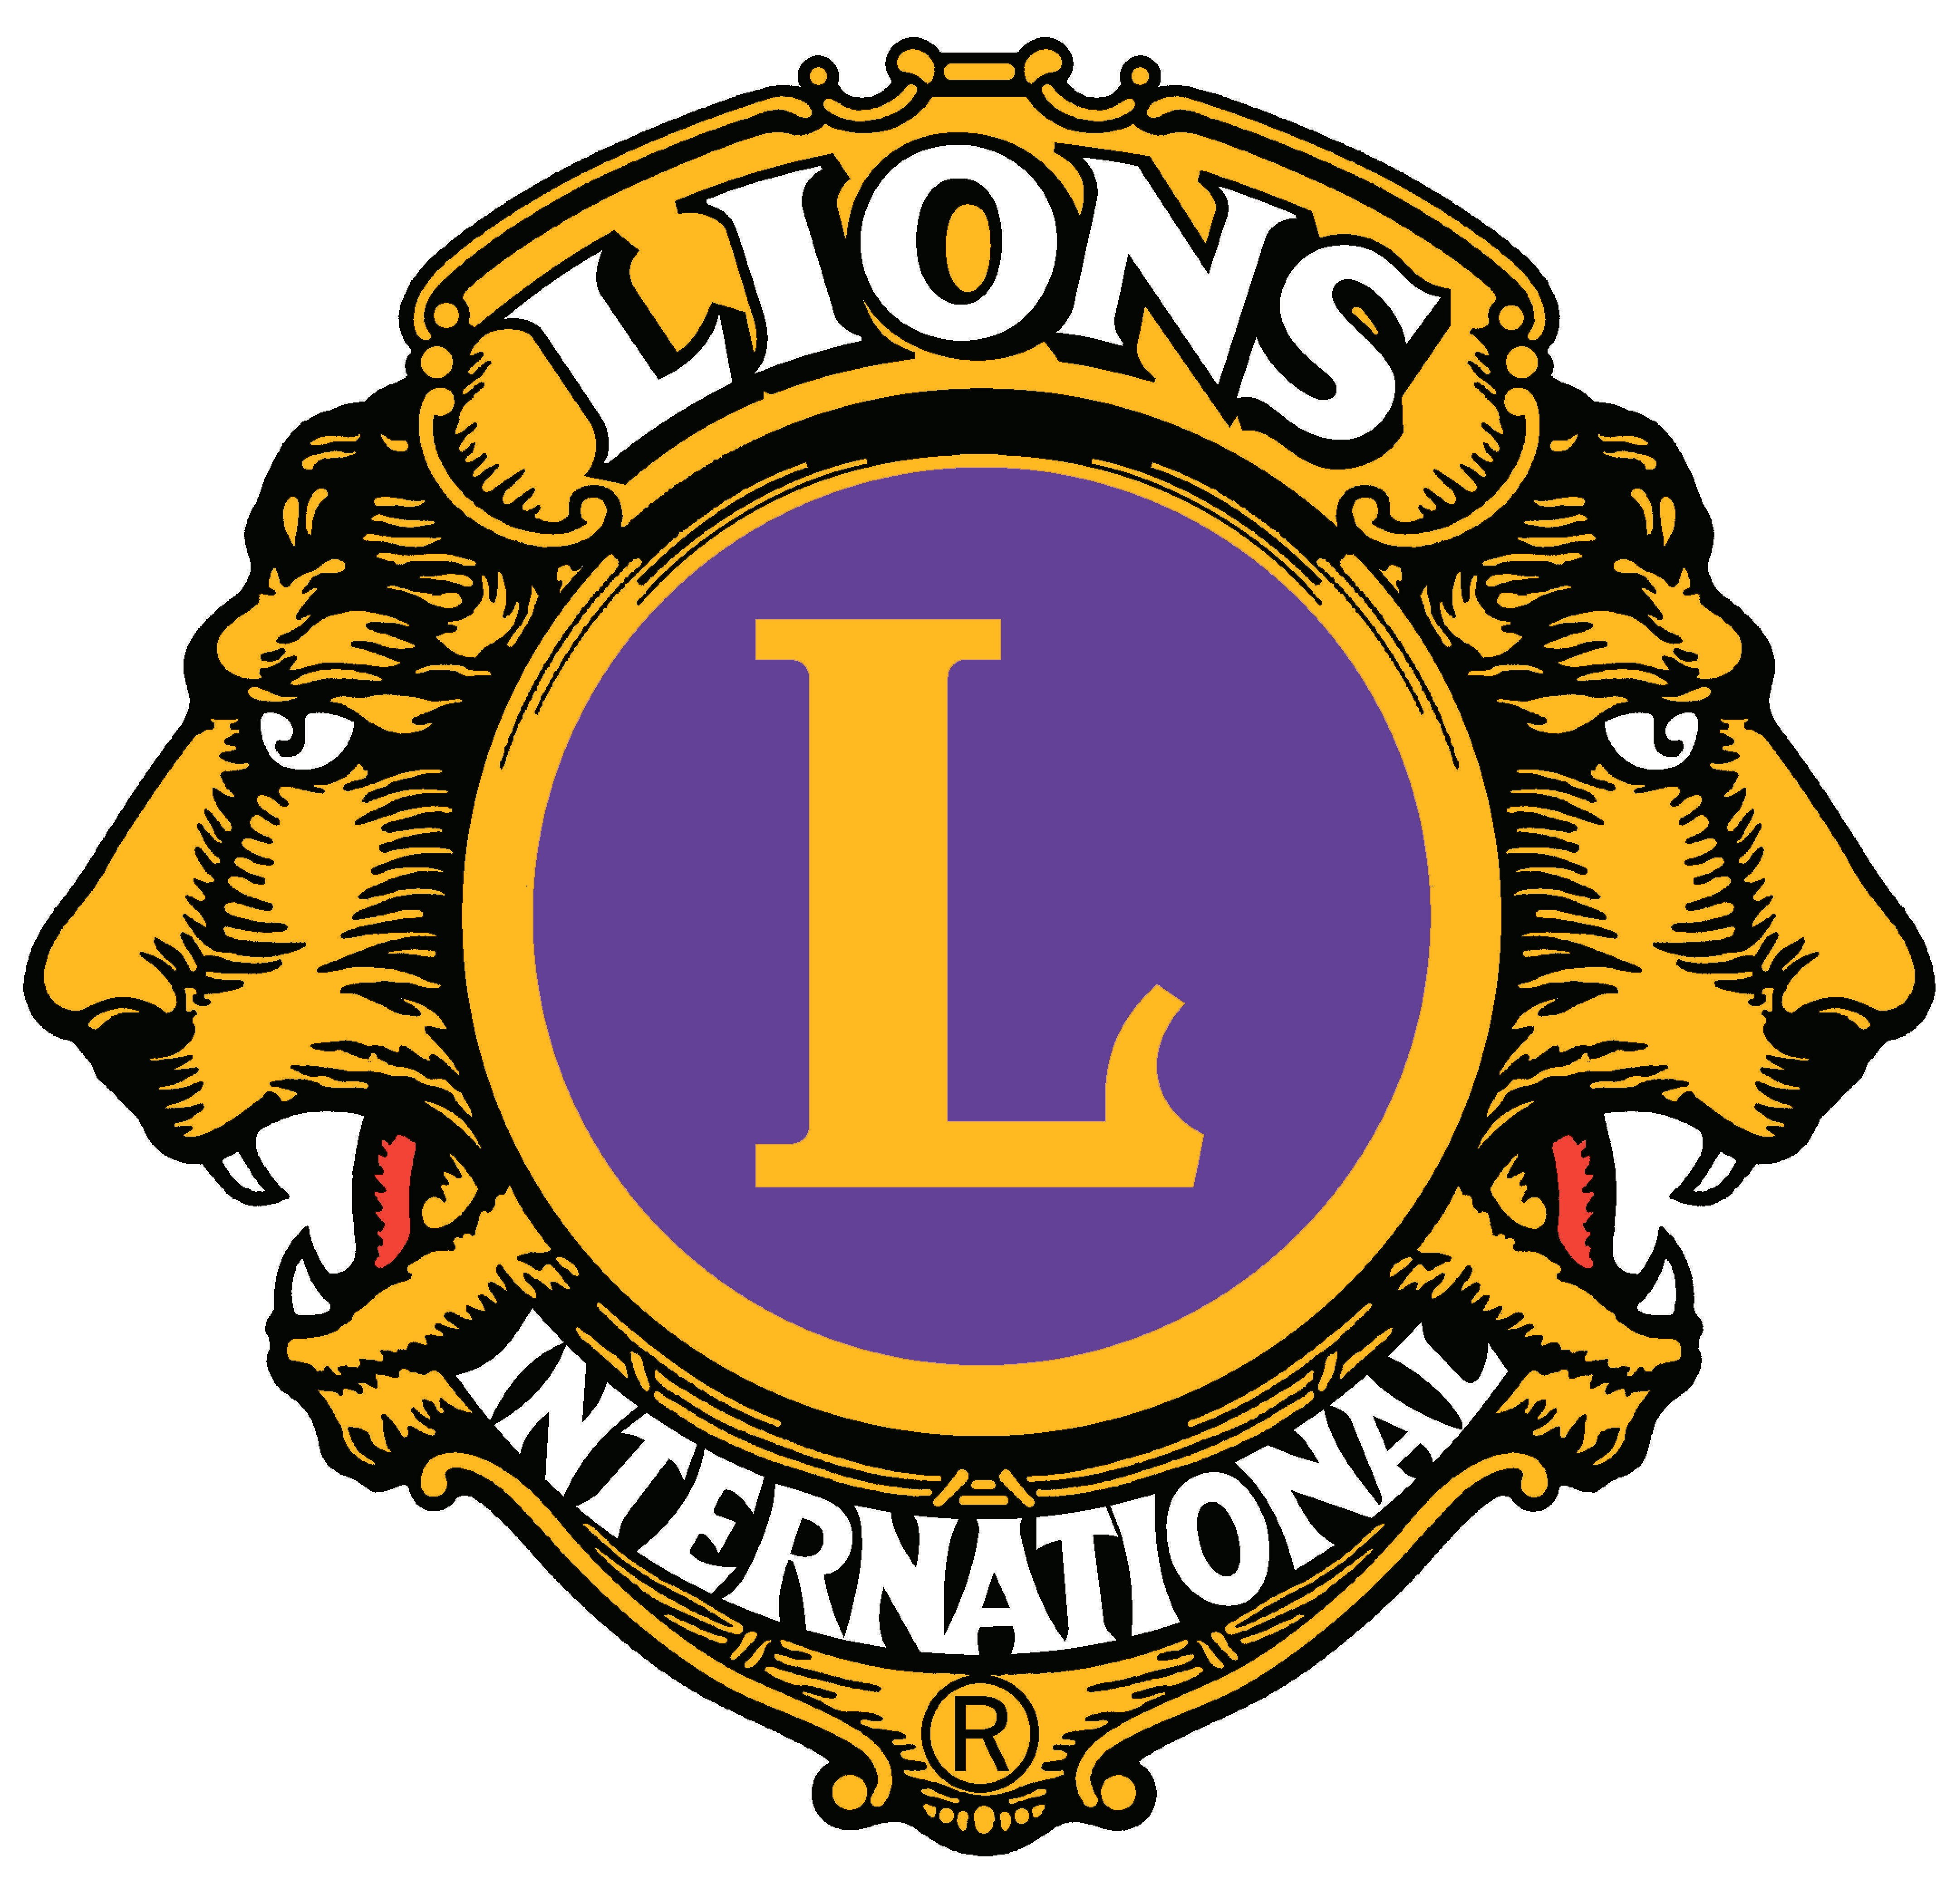 Lions Club Logo - Lions club international Logos